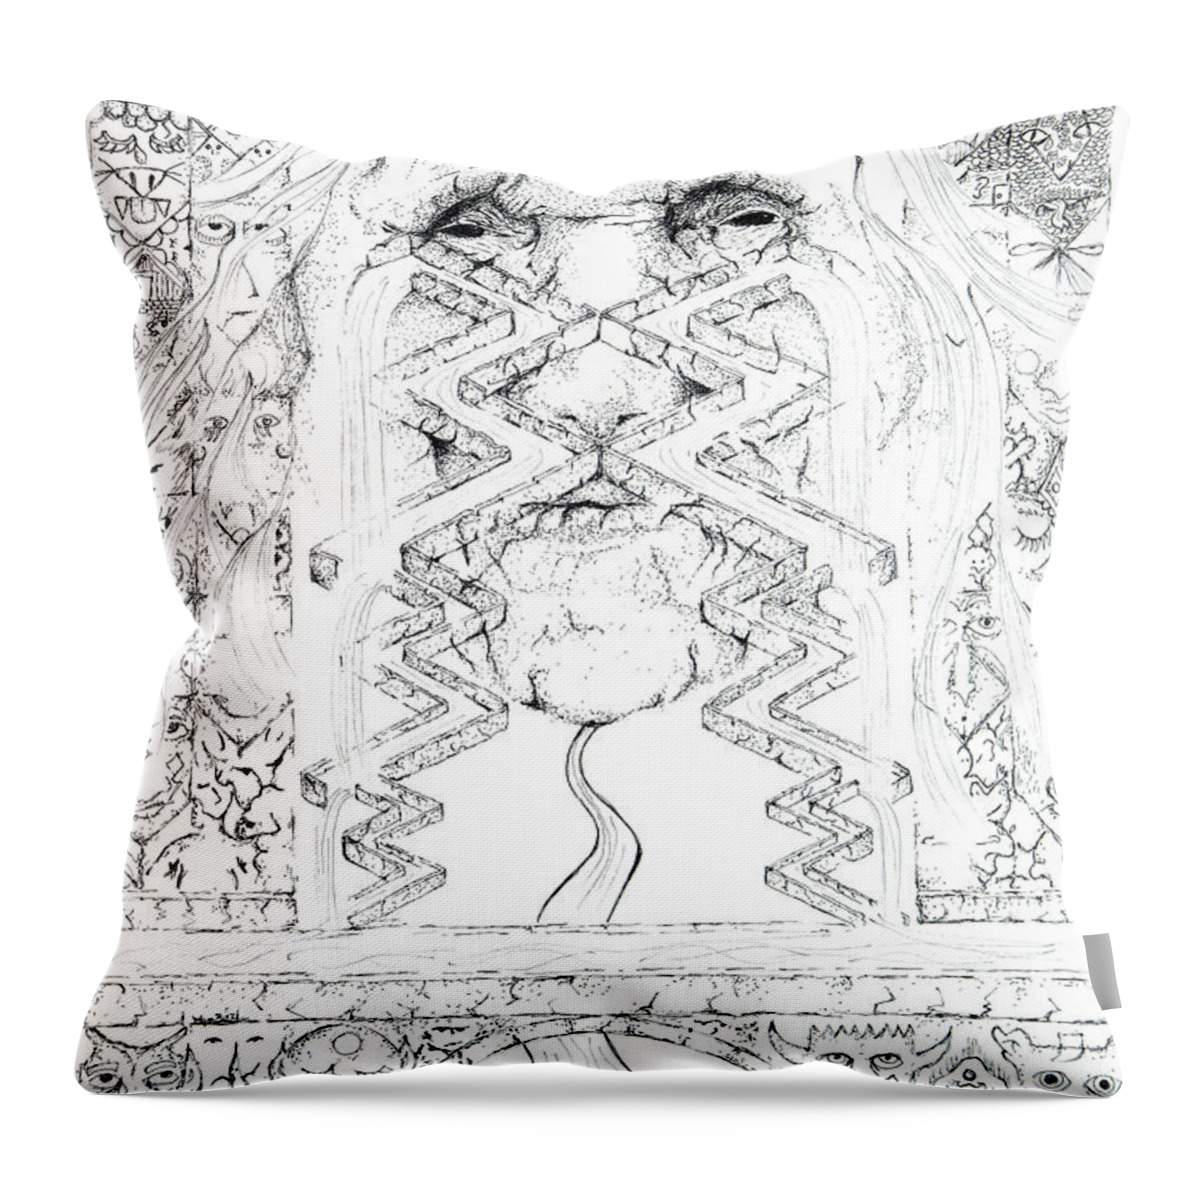 La Llorona Throw Pillow featuring the drawing La Llorona Sombra de Arreguin by Doug Johnson